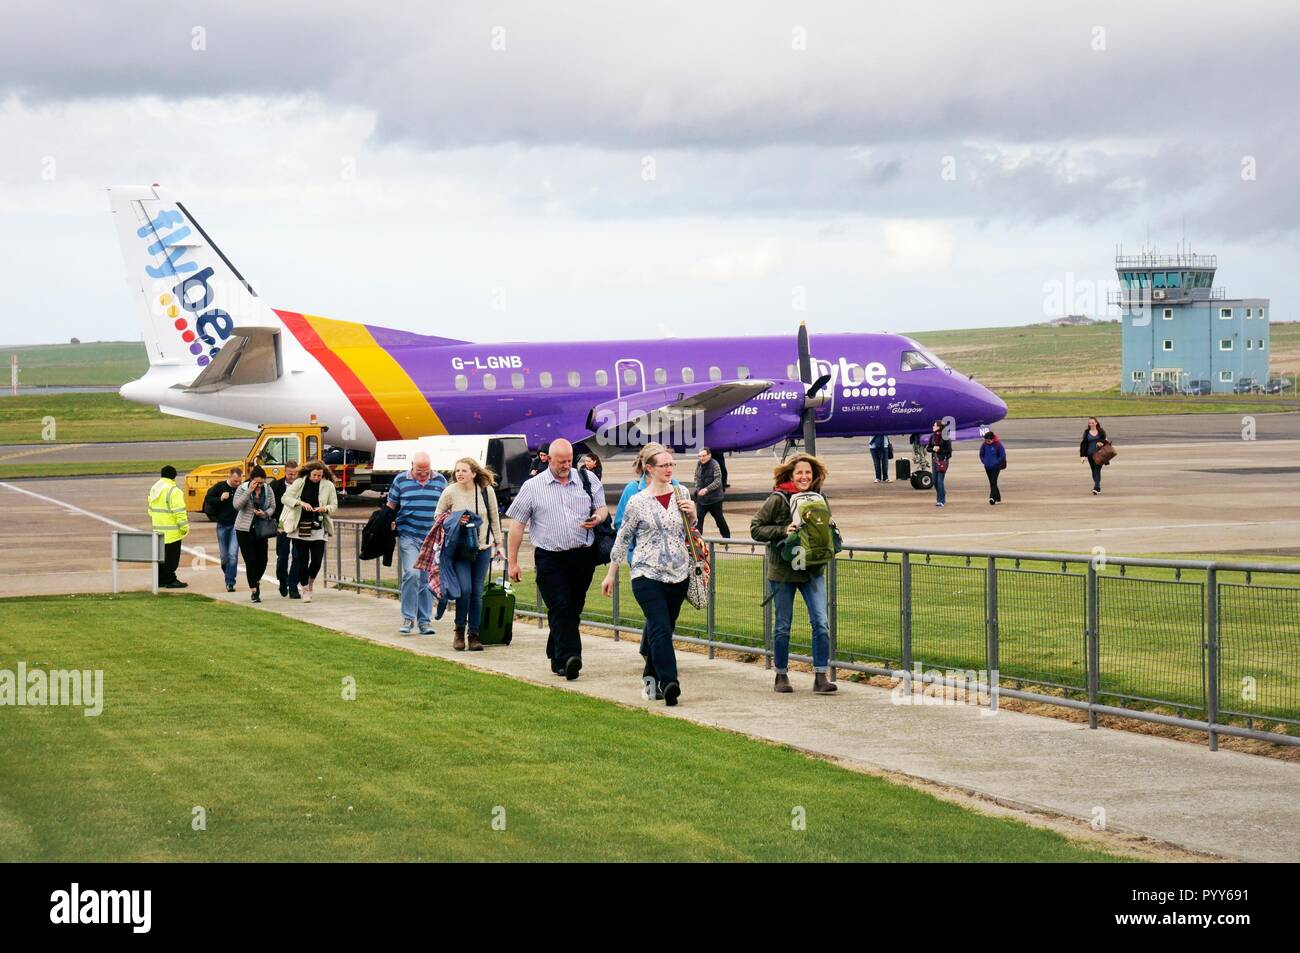 Flybe Passagierflugzeug prop Flugzeug Flugzeug auf der Landebahn schürze Passagiere bei Ankunft am Flughafen Kirwall, Orkney Inseln, Schottland, Großbritannien anreisen Stockfoto